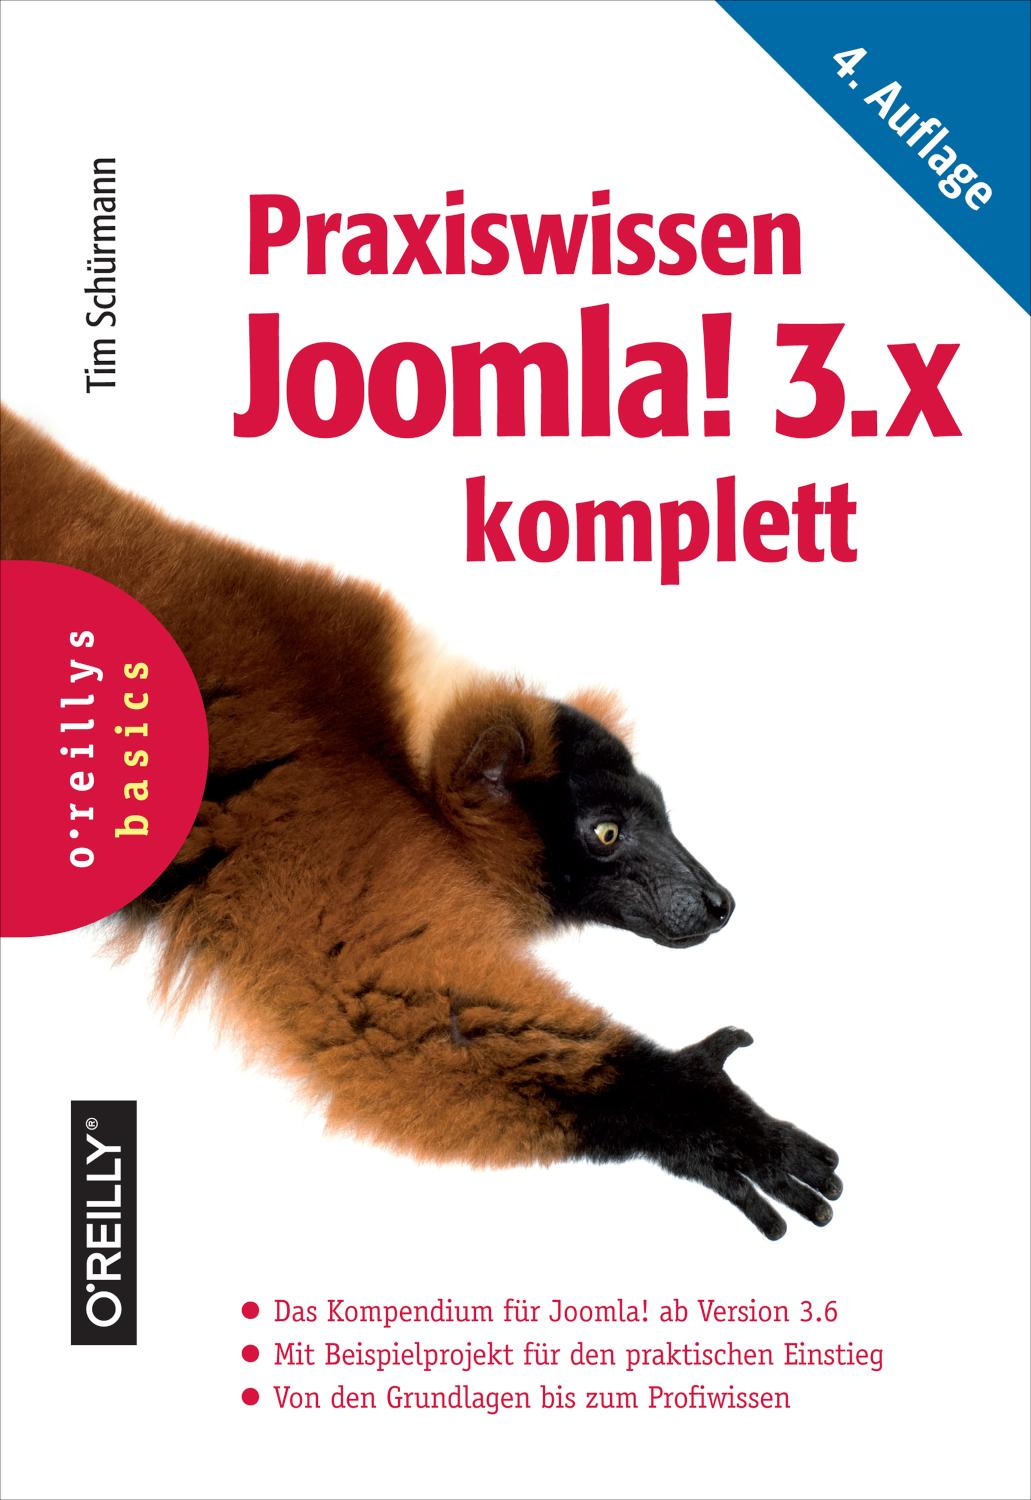 Praxiswissen Joomla! 3.x komplett Das Kompendium für Joomla! ab Version 3.6